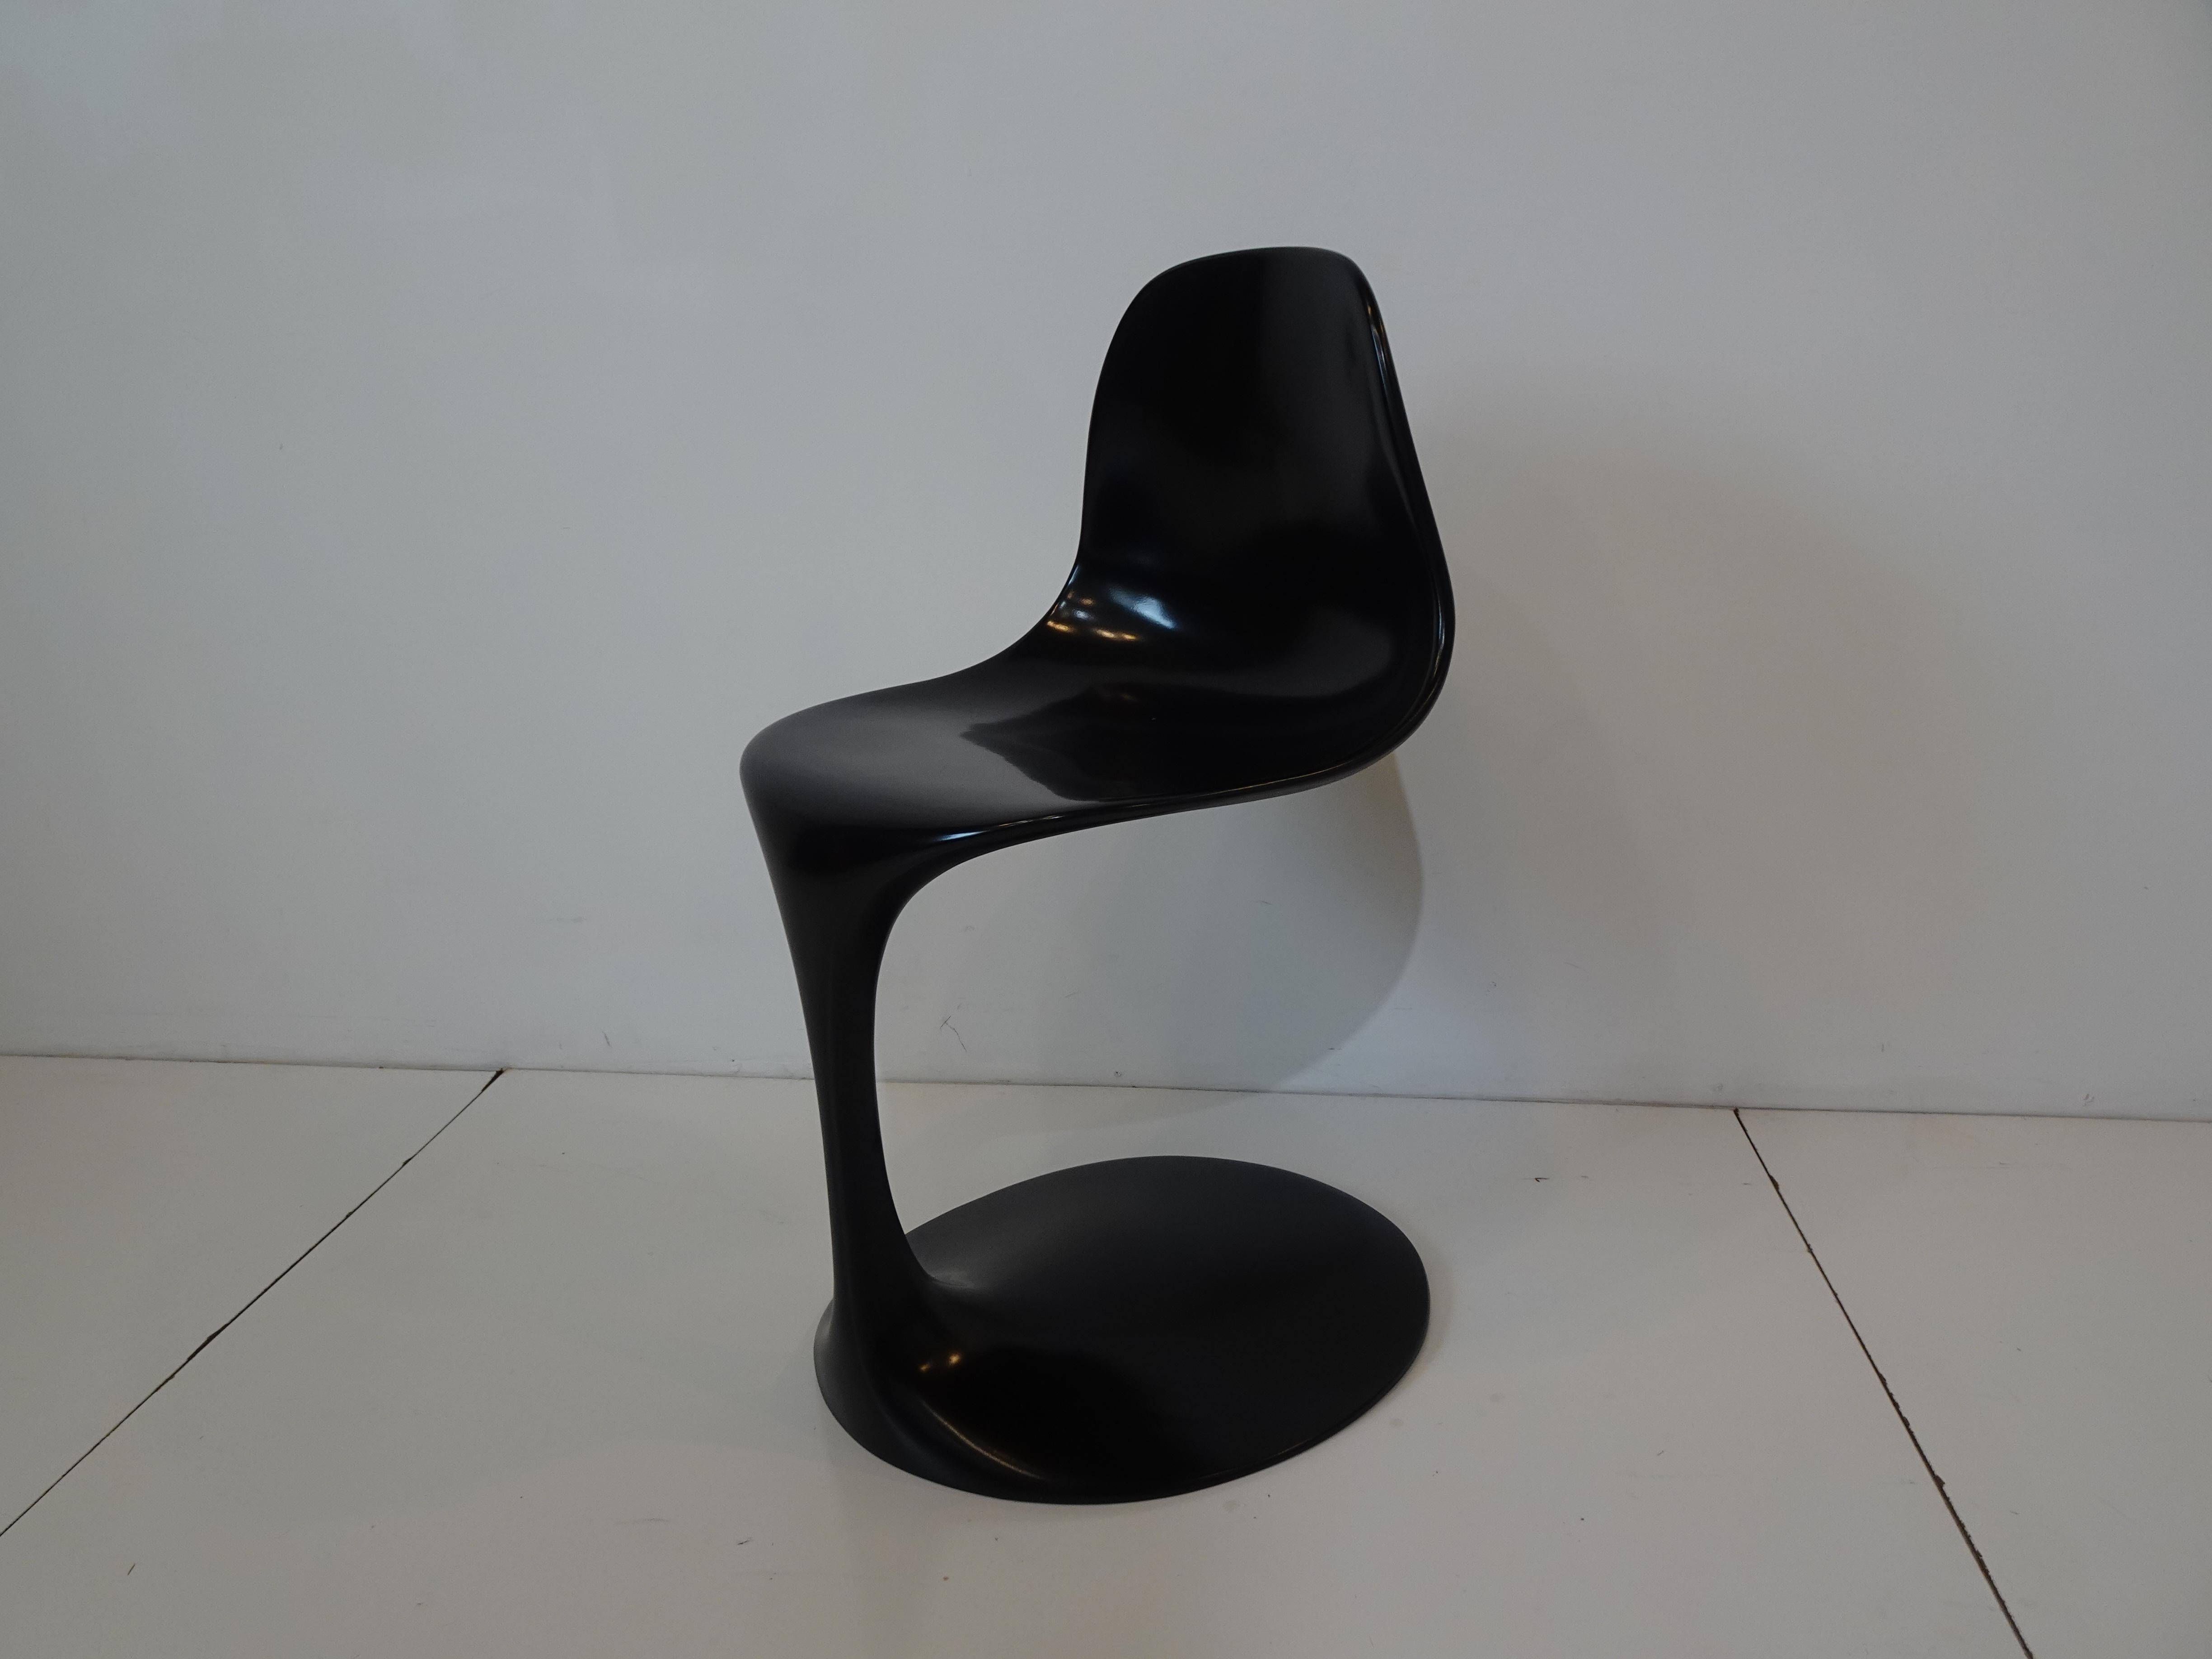 Ein schwarzer geformter Glasfaserstuhl, entworfen von Rudi Bonzanini. Der Stuhl sitzt auf einem sehr schlanken Stiel, der vom Sitz bis zum ovalen Fuß reicht. Ein Kunstwerk, ein Stuhl, der aussieht, als wäre er aus einer Dose gegossen worden, unter